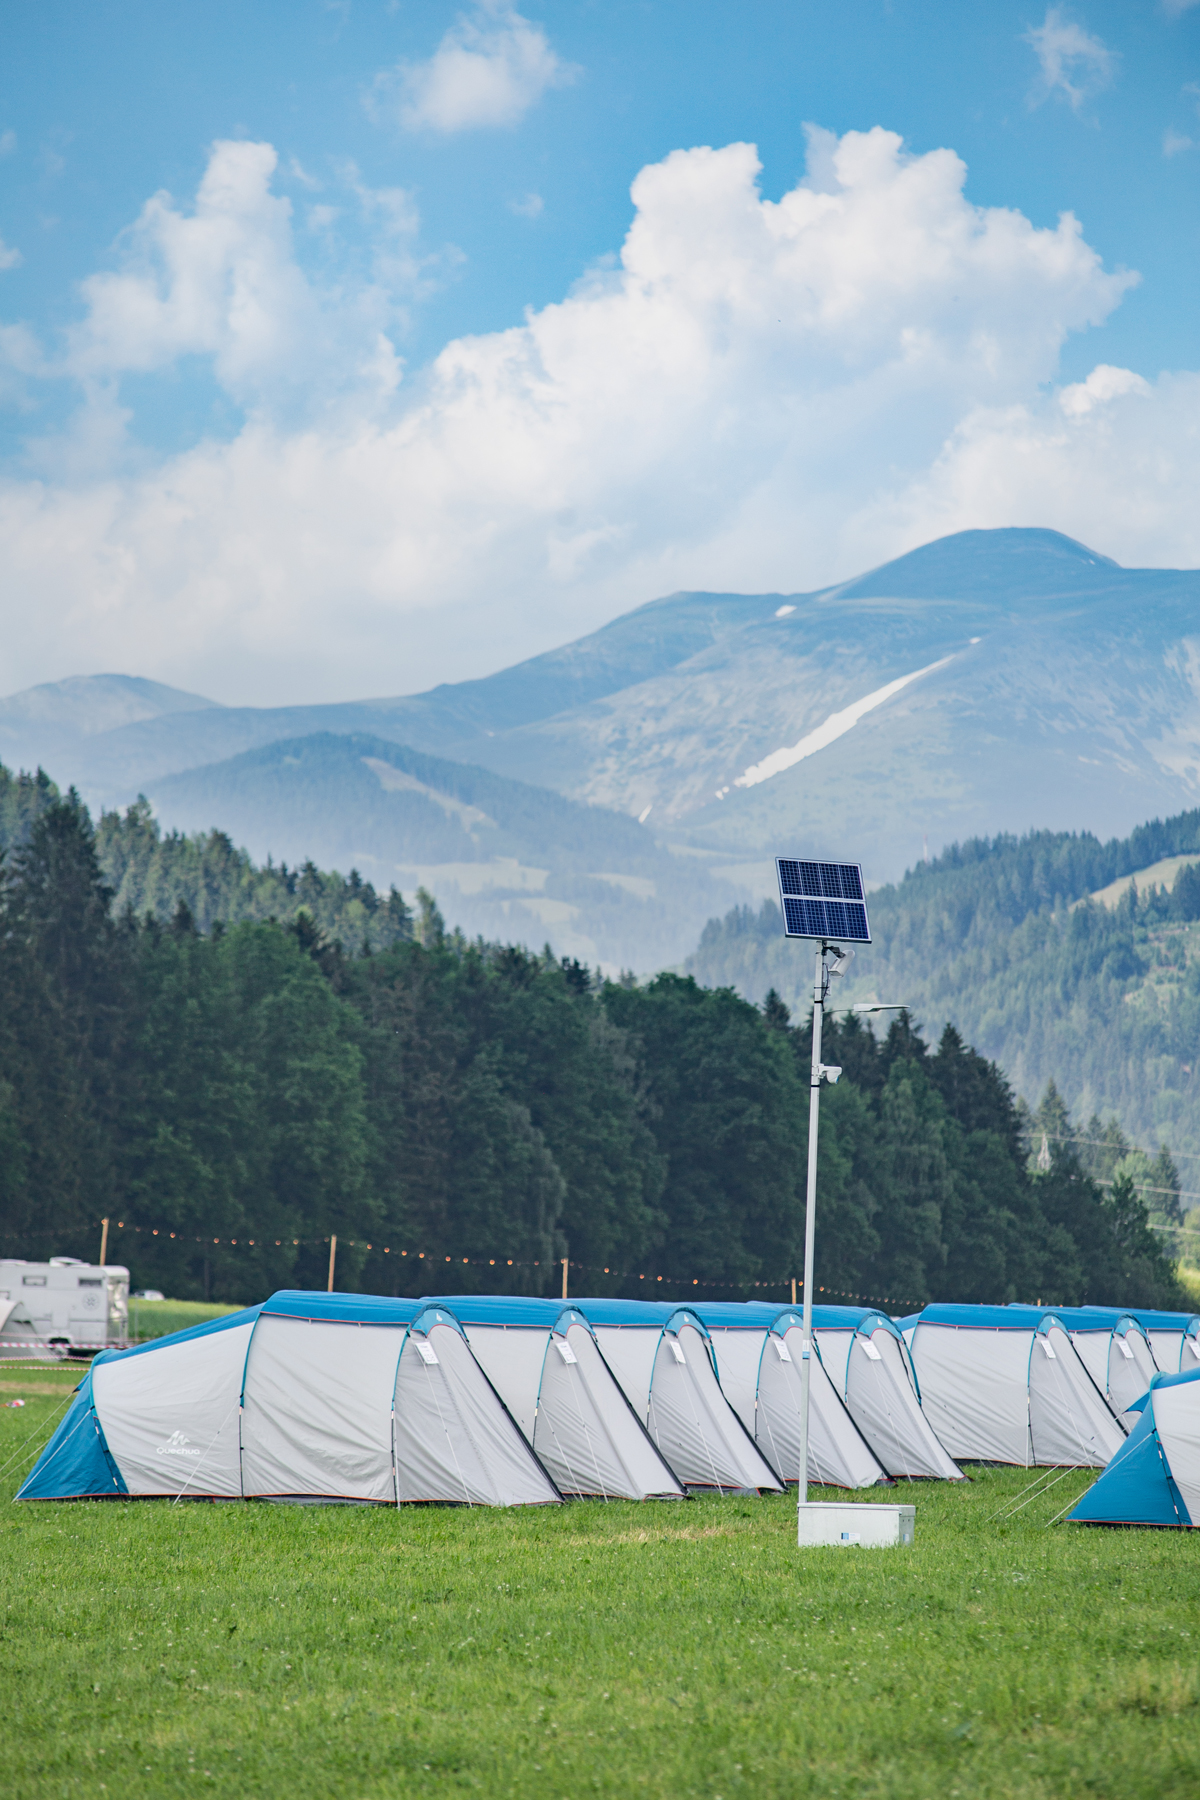 Ottimo segnale wifi in tutta l'area del campeggio | Miglior campeggio e hotel valutato | F1 e MotoGP | Red Bull Ring| Spielberg - Austria